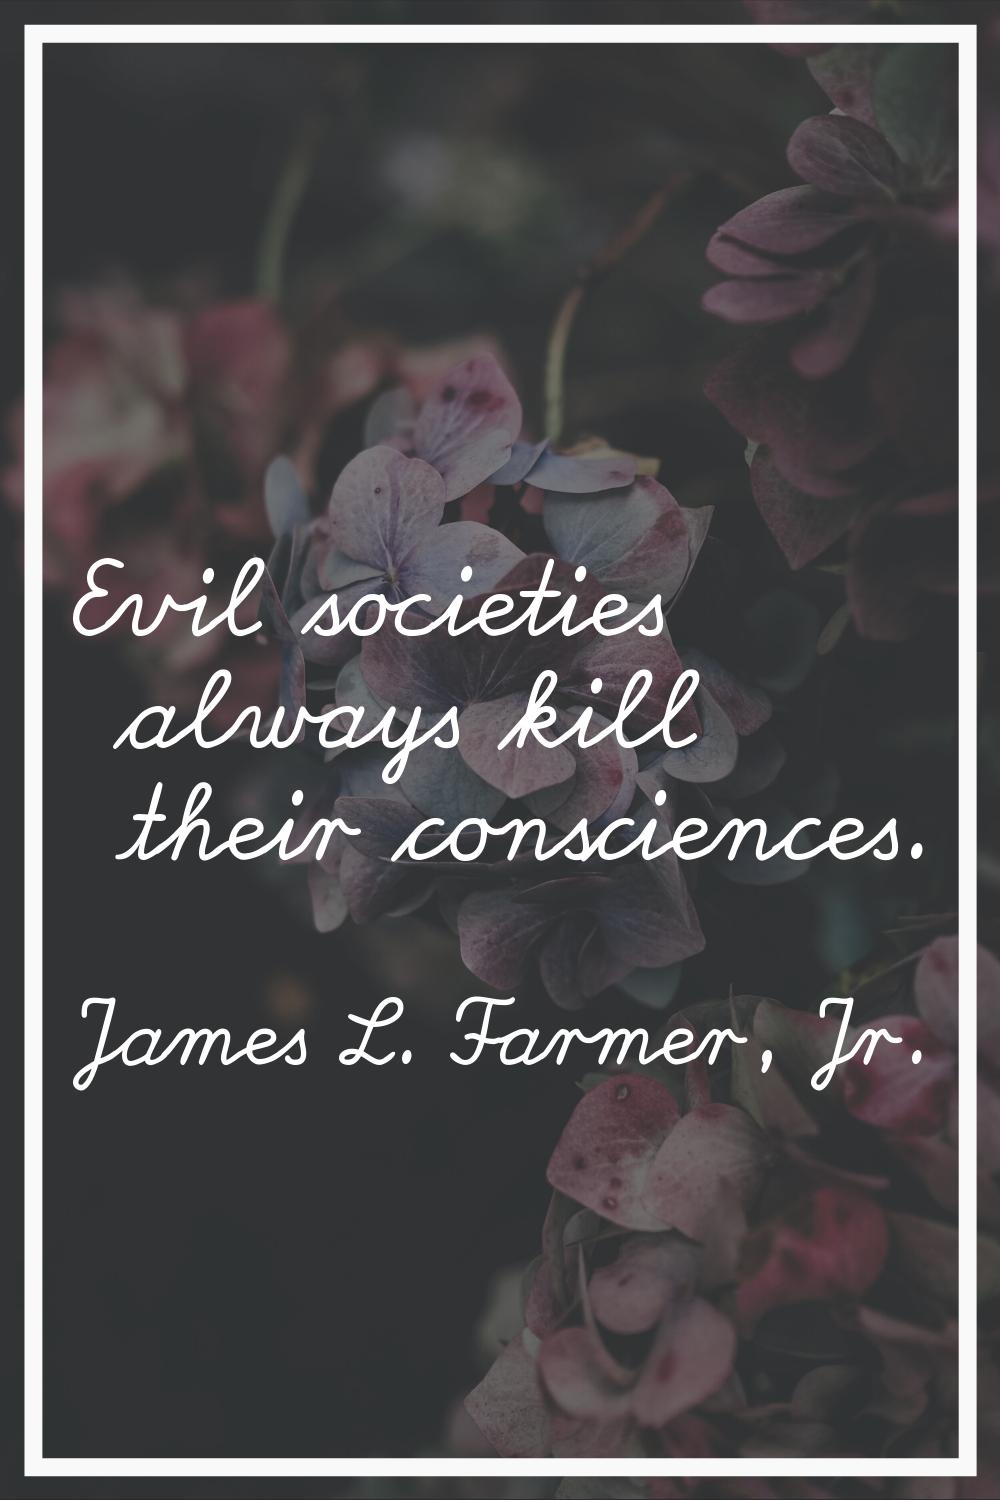 Evil societies always kill their consciences.